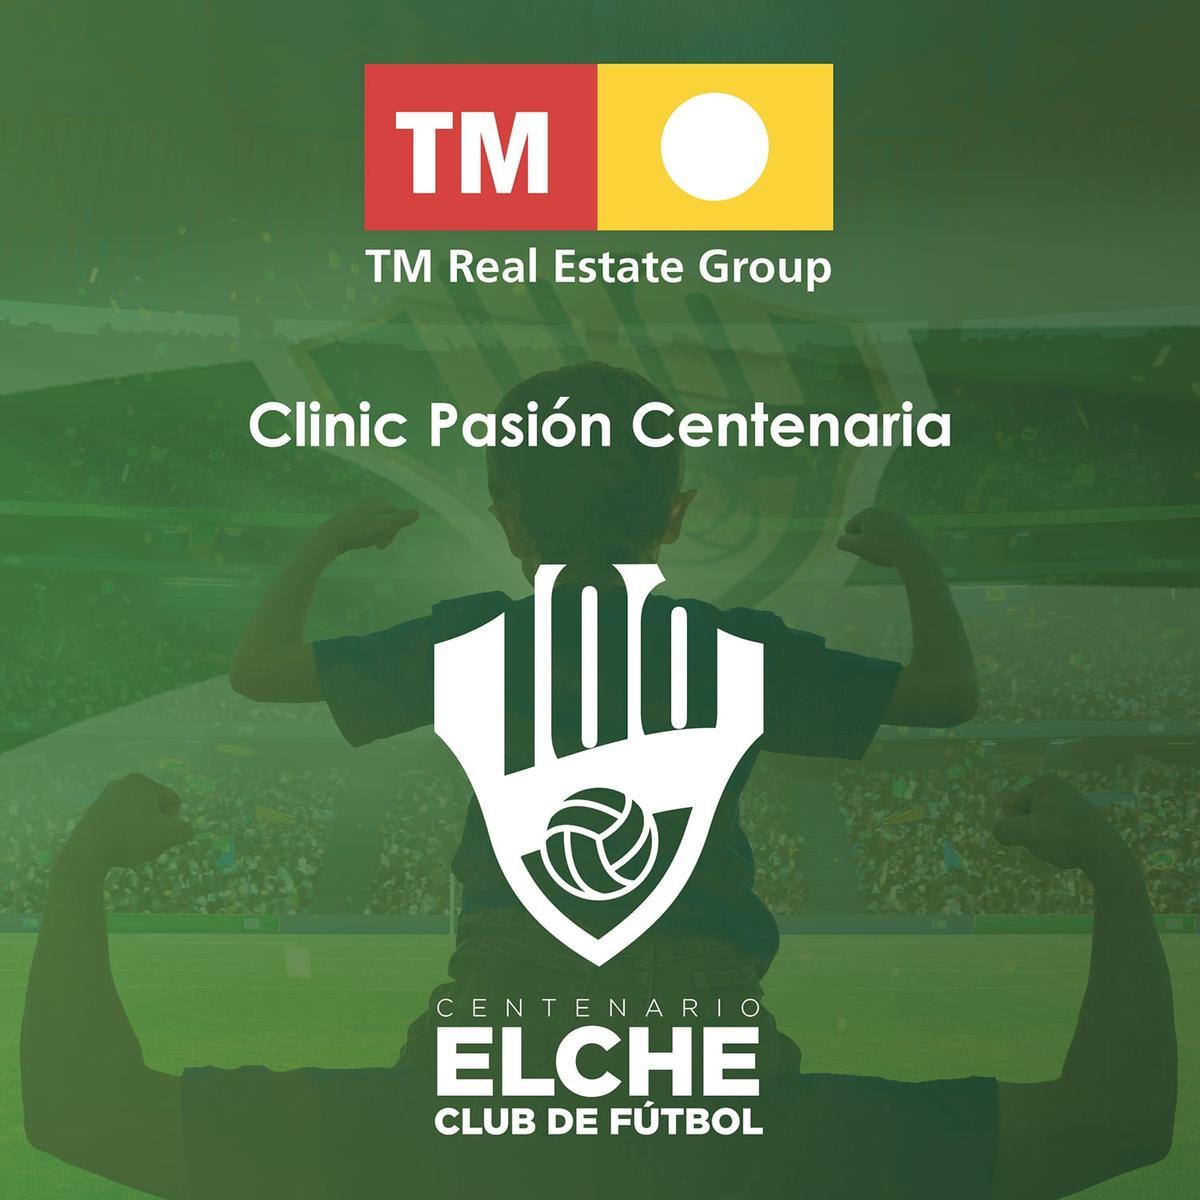 TM Grupo Inmobiliario patrocina este domingo el Clinic Pasión Centenaria del Elche CF